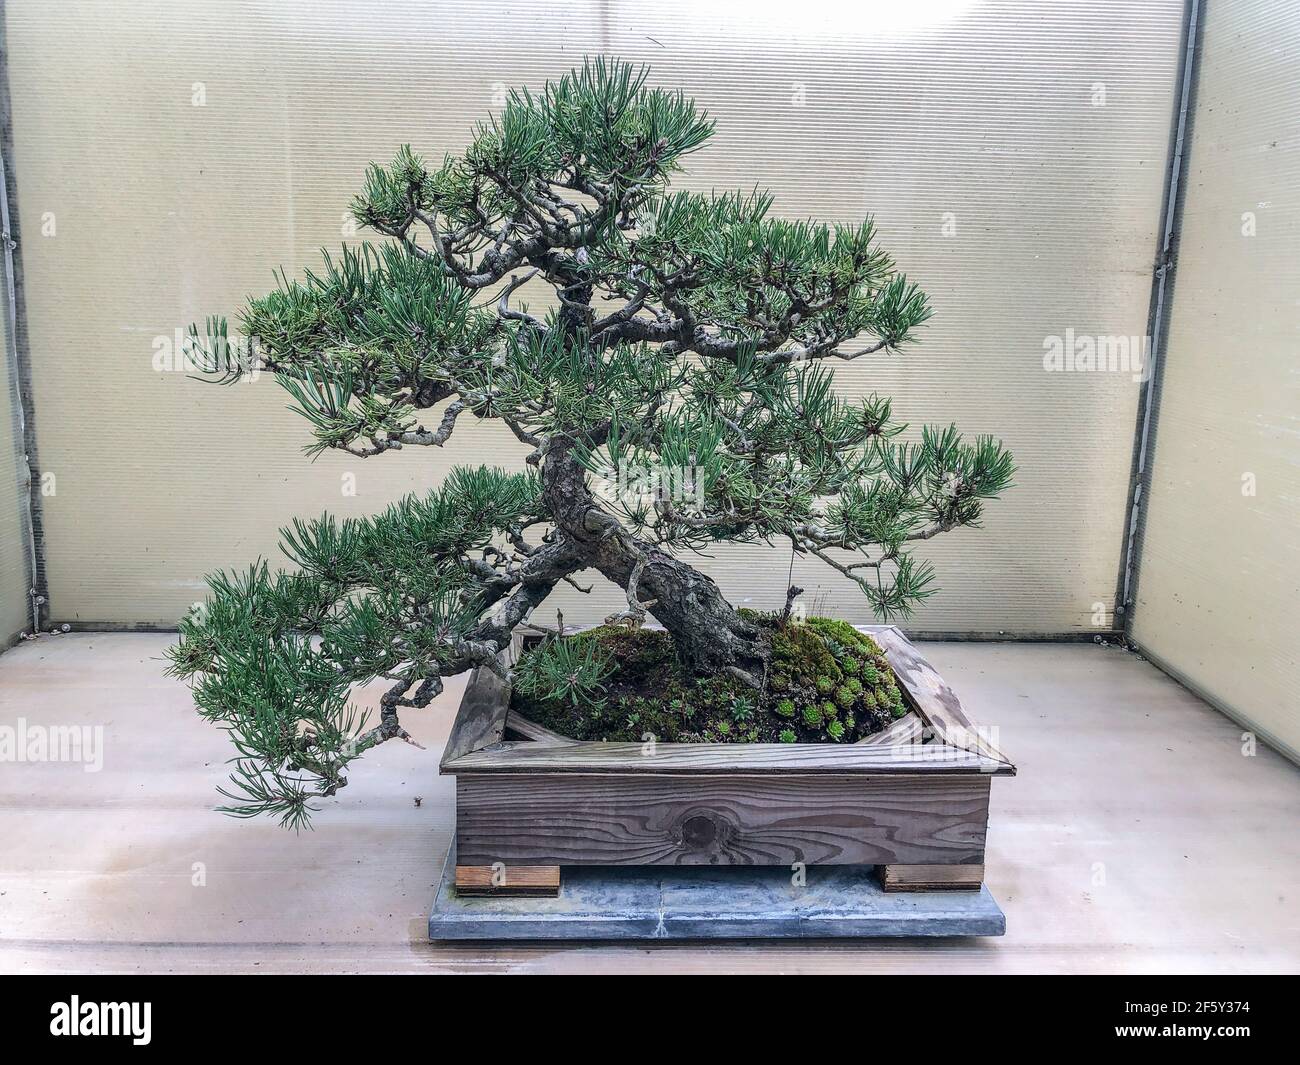 Le pin de Mugo (Pinus mugo) est une espèce de conifères, originaire des habitats de haute altitude du sud-ouest à l'Europe centrale et du sud-est. Banque D'Images